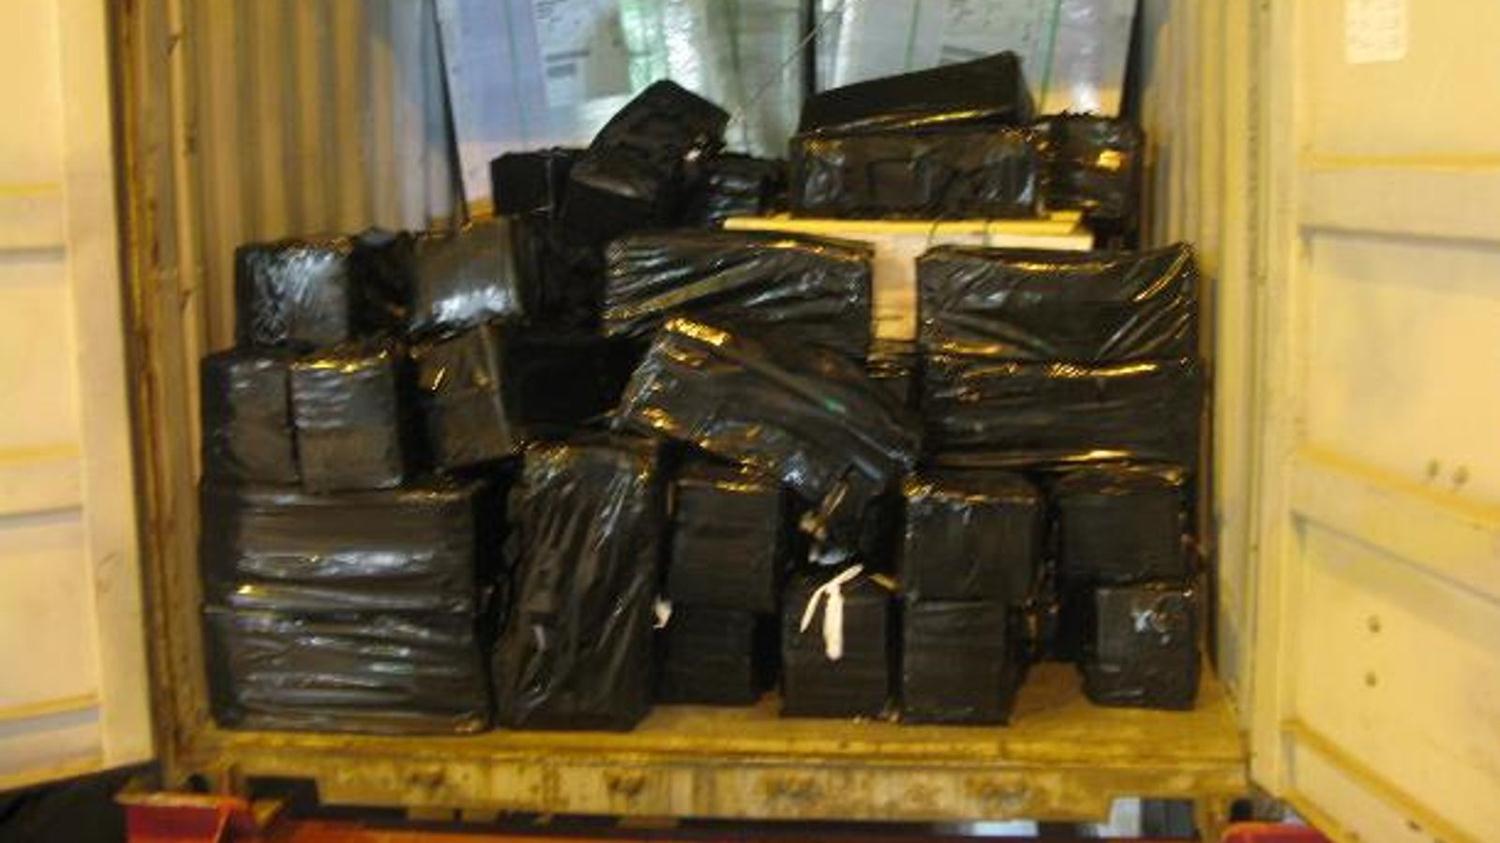 ngiltere'de dev narkotik operasyonu: 100 milyon sterlin deerinde kokain yakaland